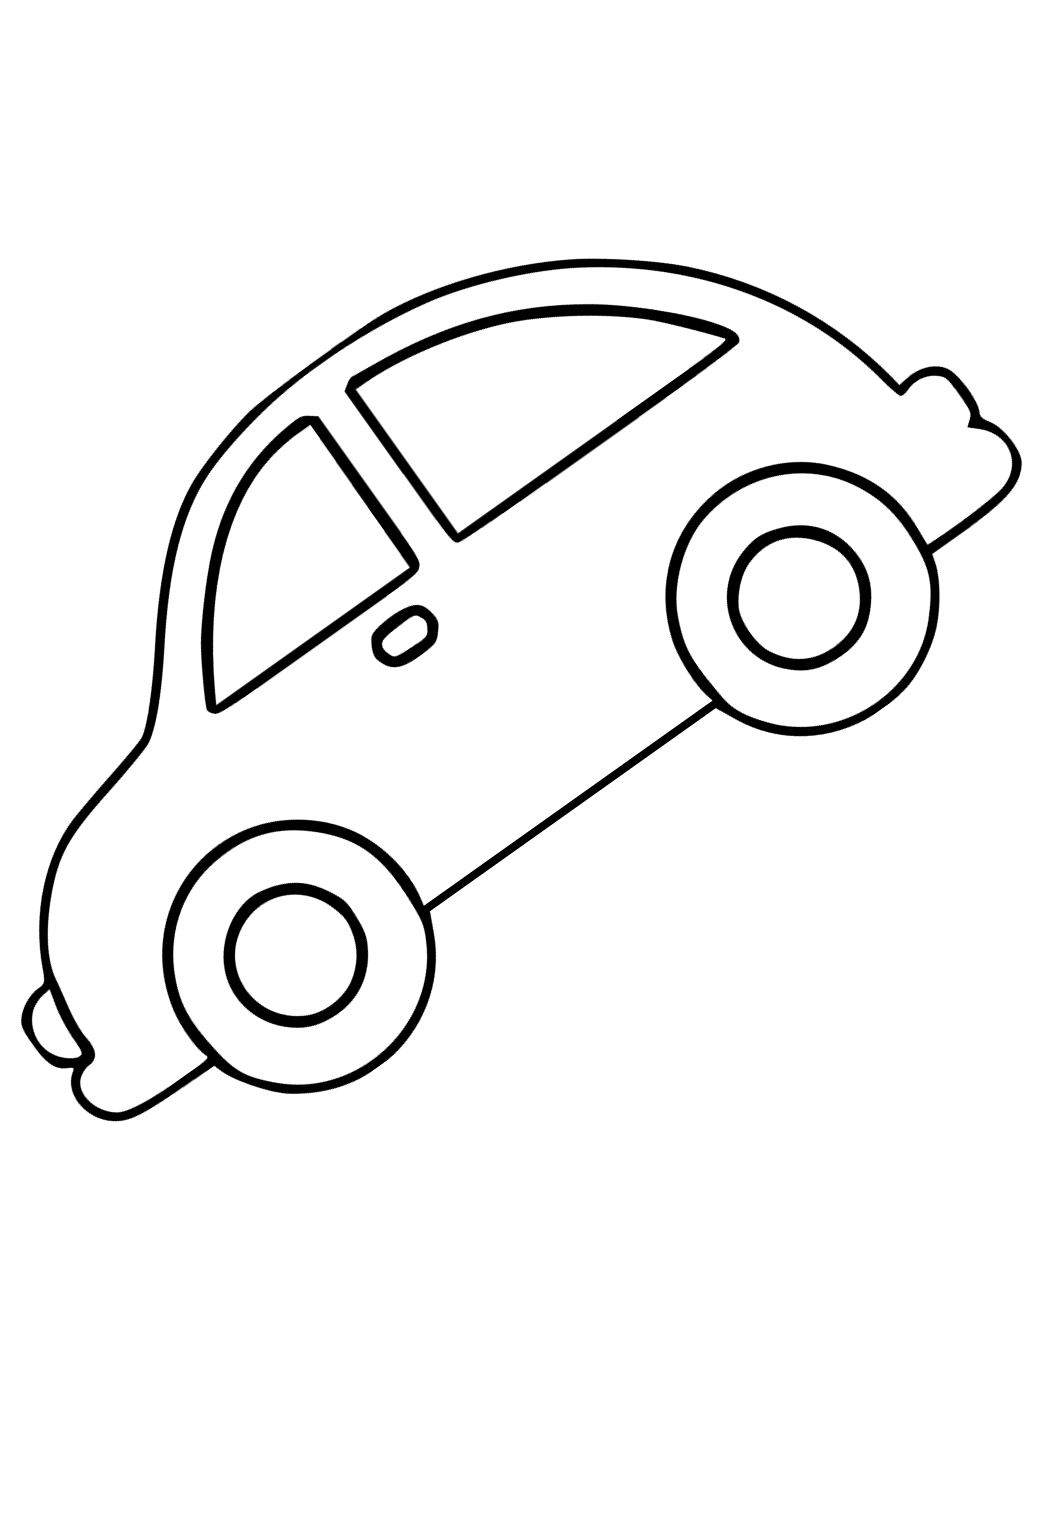 Car